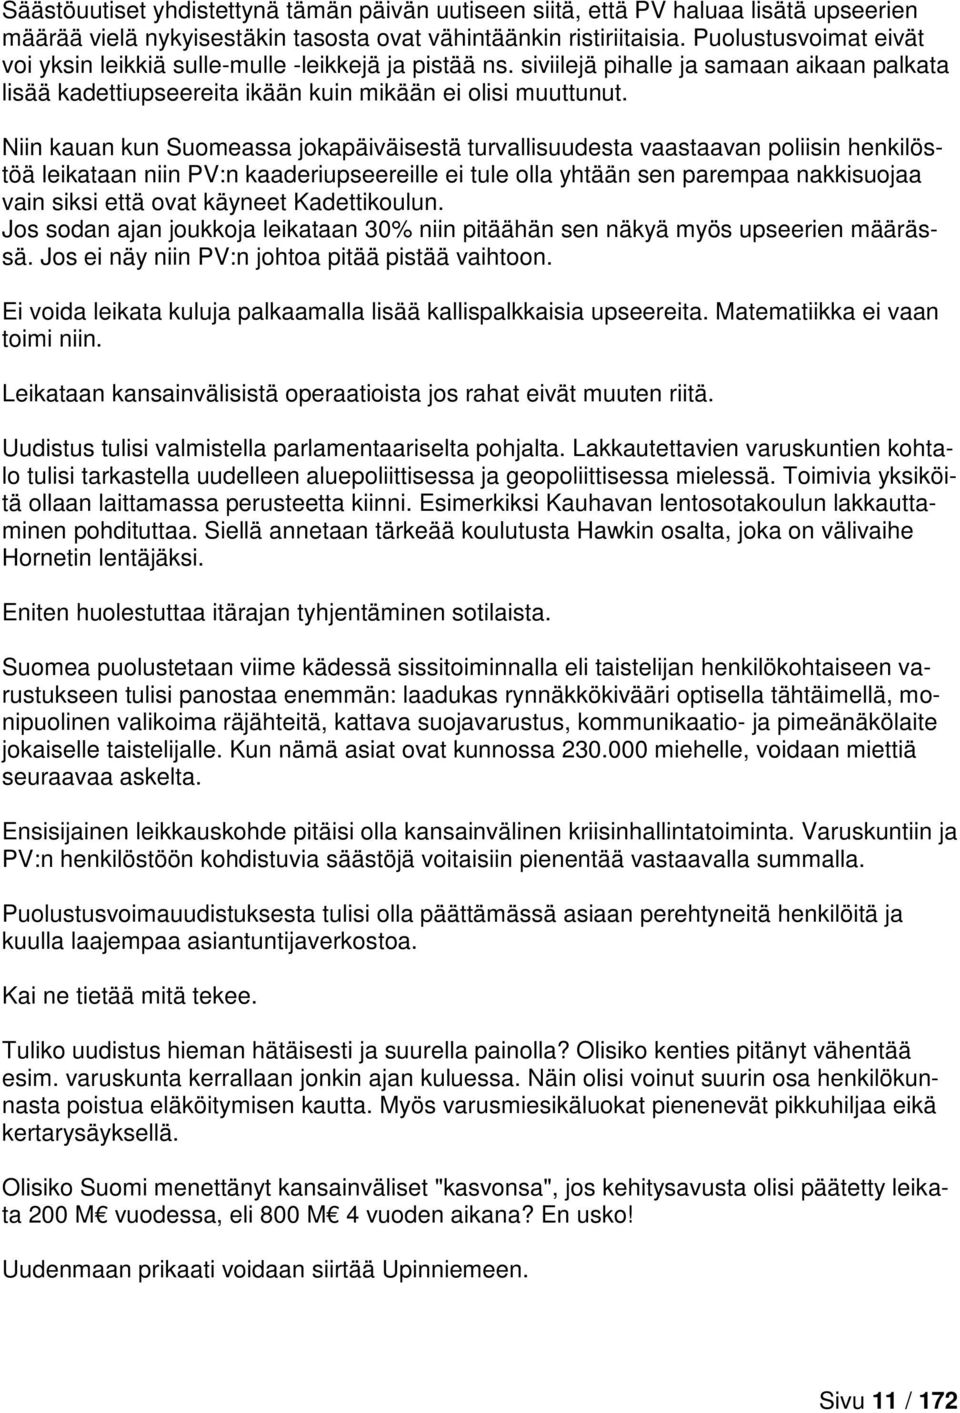 Niin kauan kun Suomeassa jokapäiväisestä turvallisuudesta vaastaavan poliisin henkilöstöä leikataan niin PV:n kaaderiupseereille ei tule olla yhtään sen parempaa nakkisuojaa vain siksi että ovat